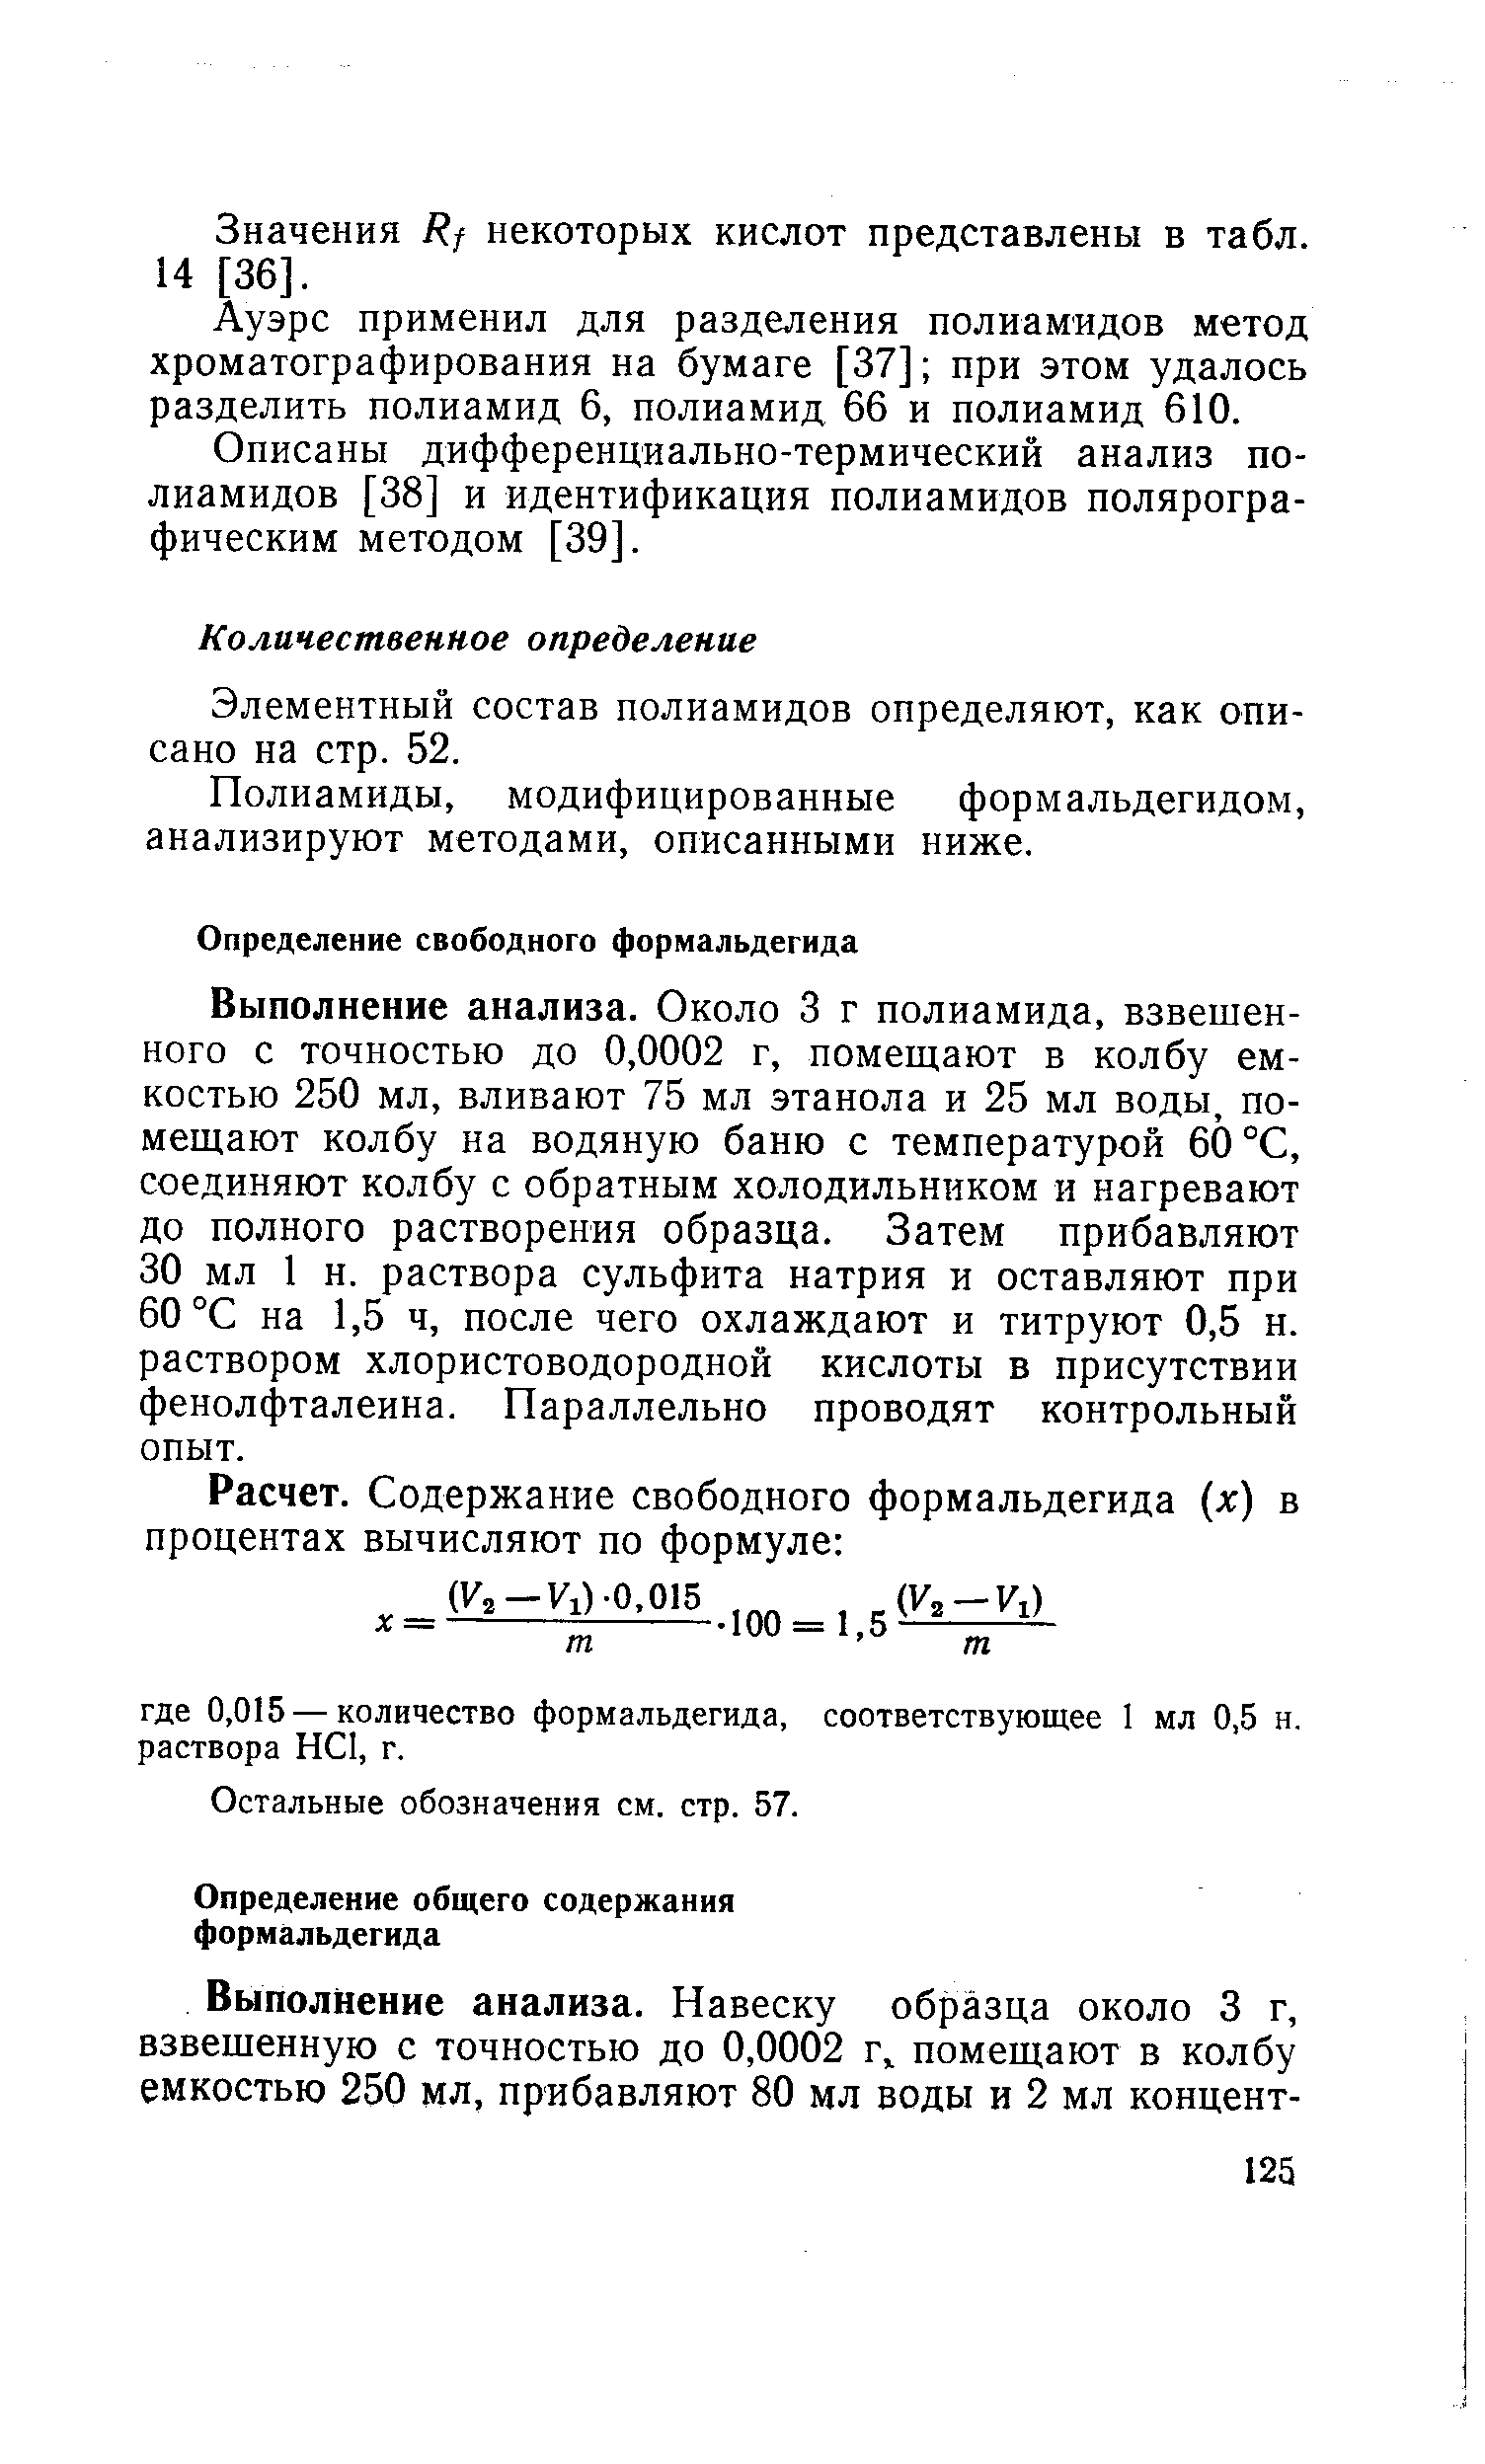 Элементный состав полиамидов определяют, как описано на стр. 52.